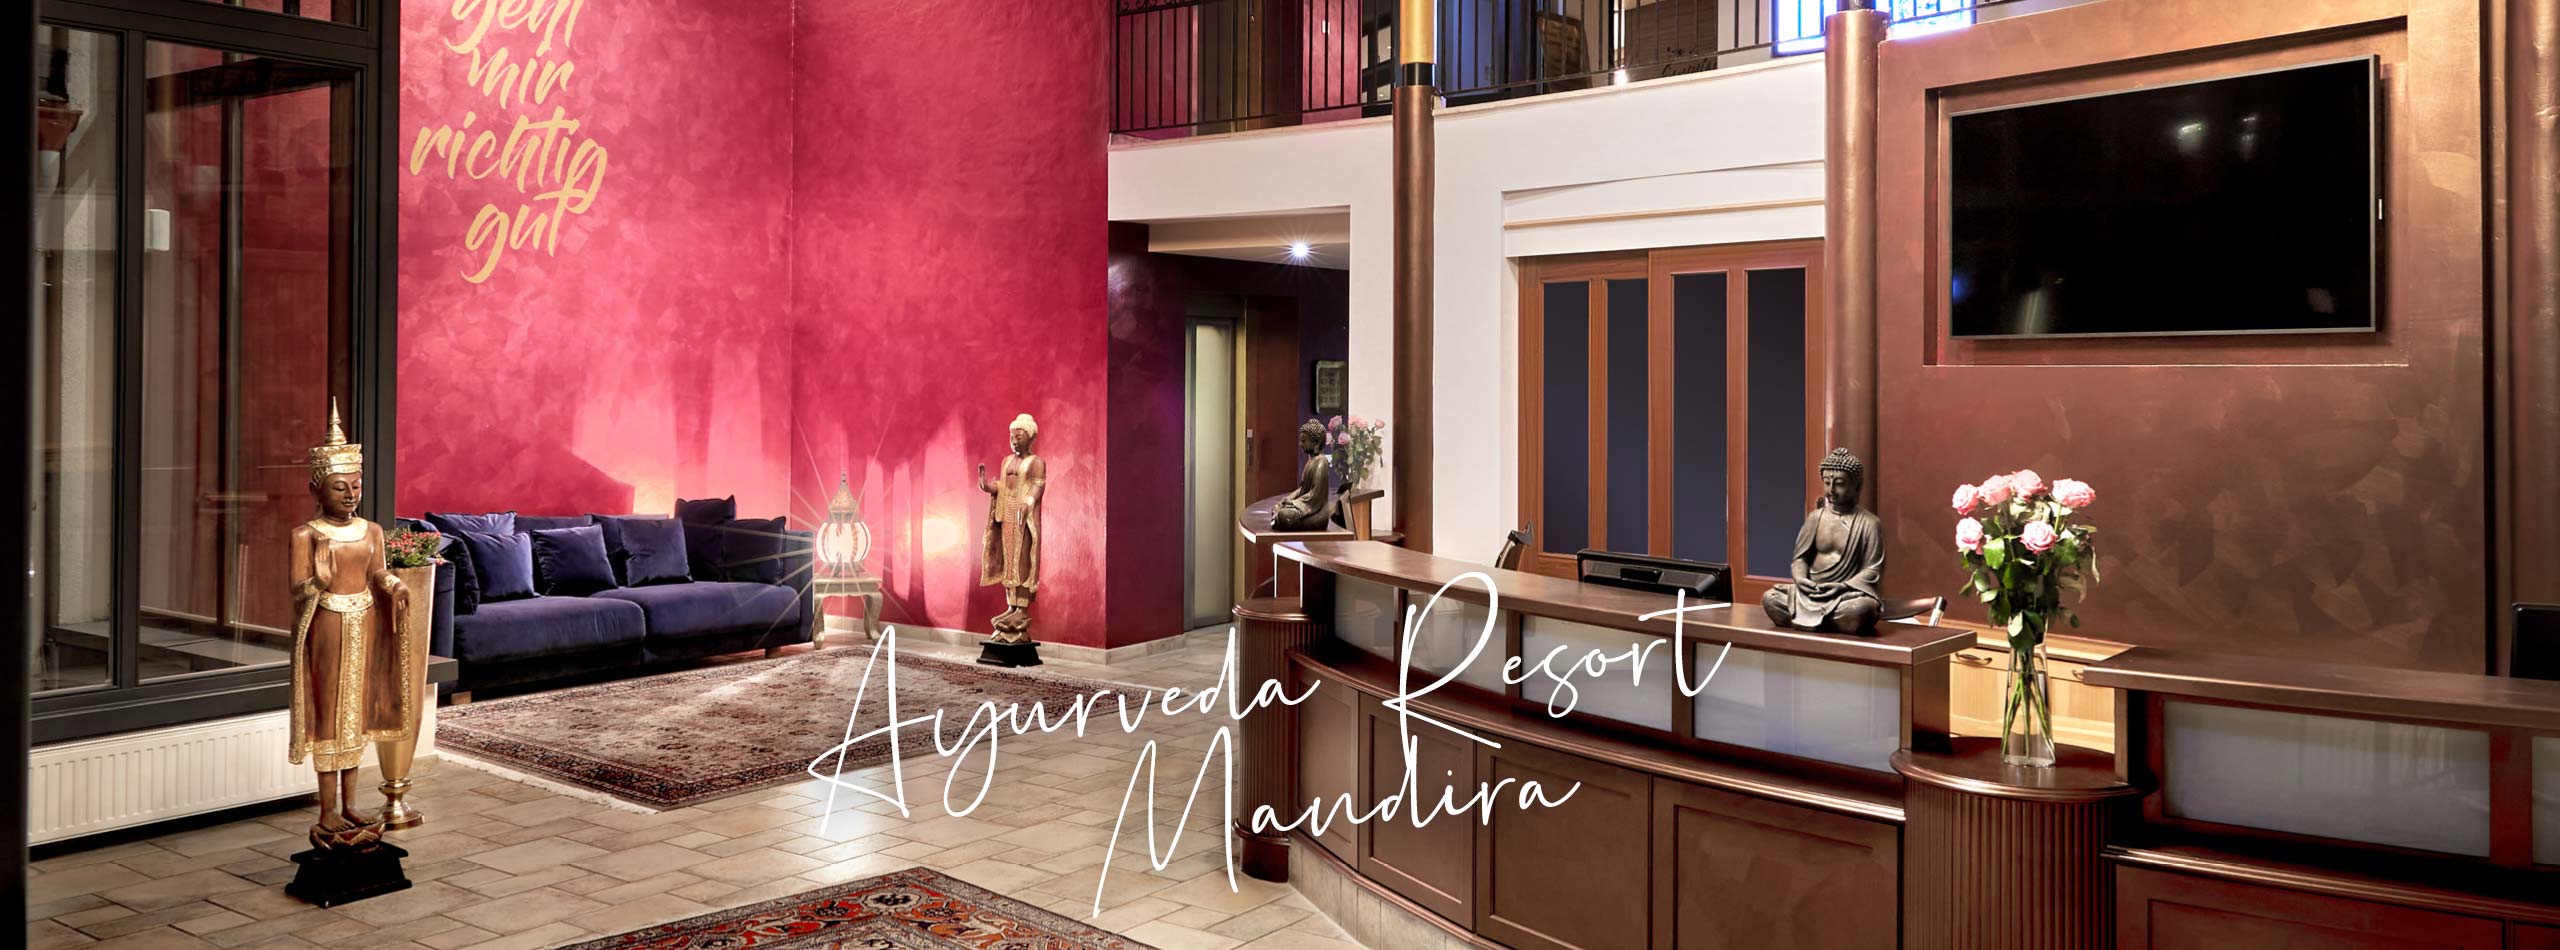 Niche-Destinations-Hotel-Collection-Holistic-Ayurveda-Resort-Mandira-Header-Winter